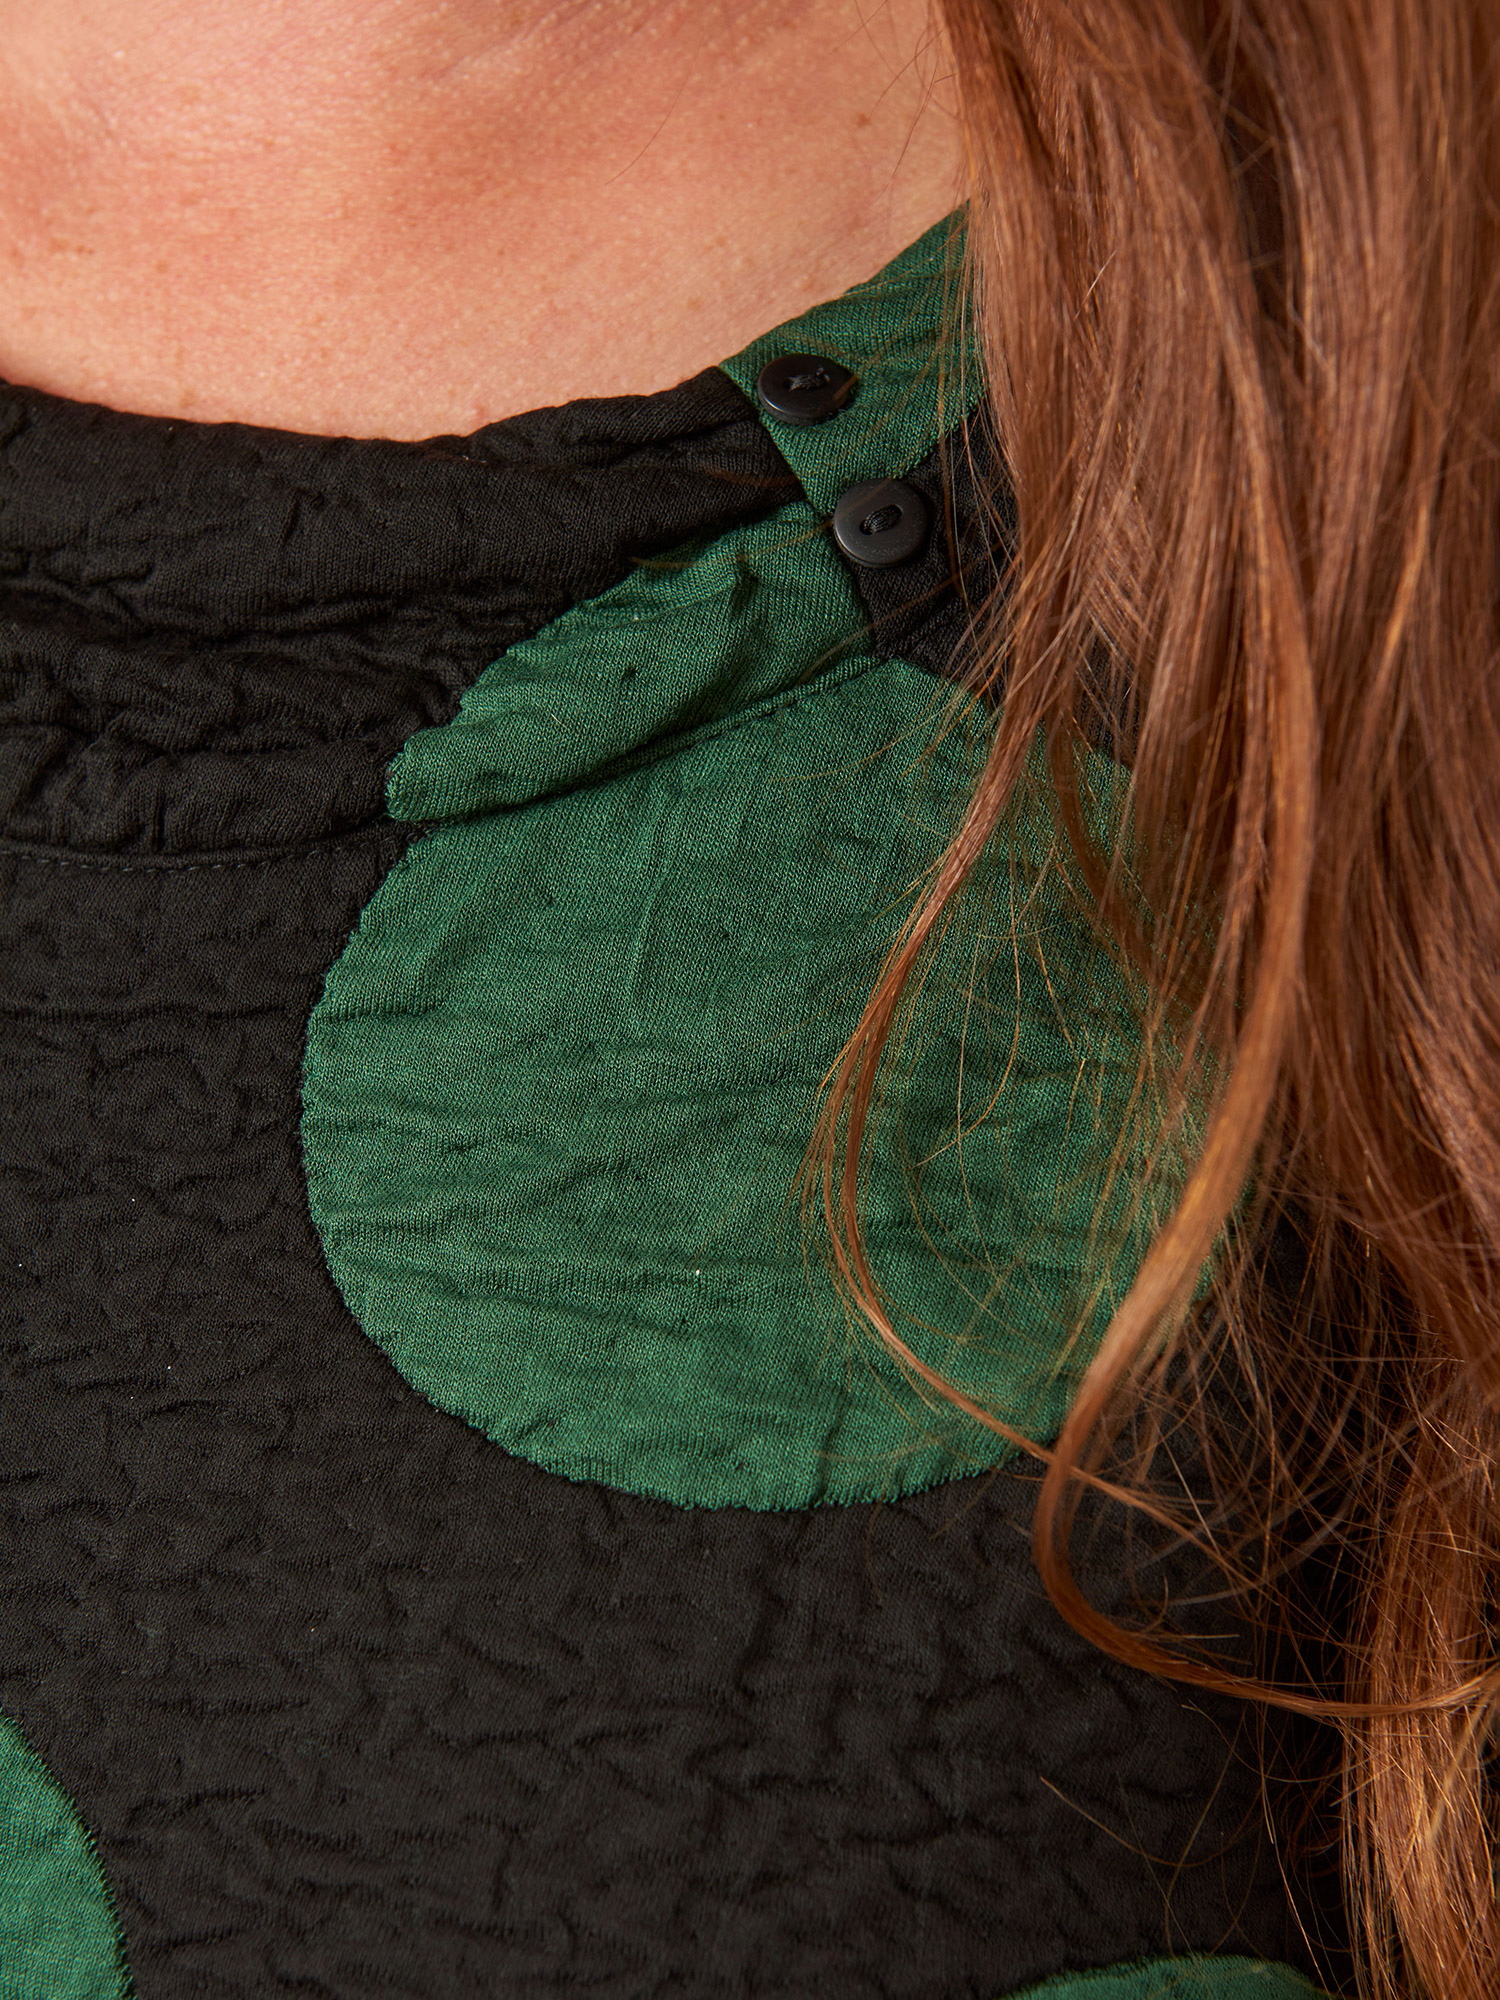 Jola - Lækker sort tunika i kraftig kvalitet med store grønne prikker fra Pont Neuf